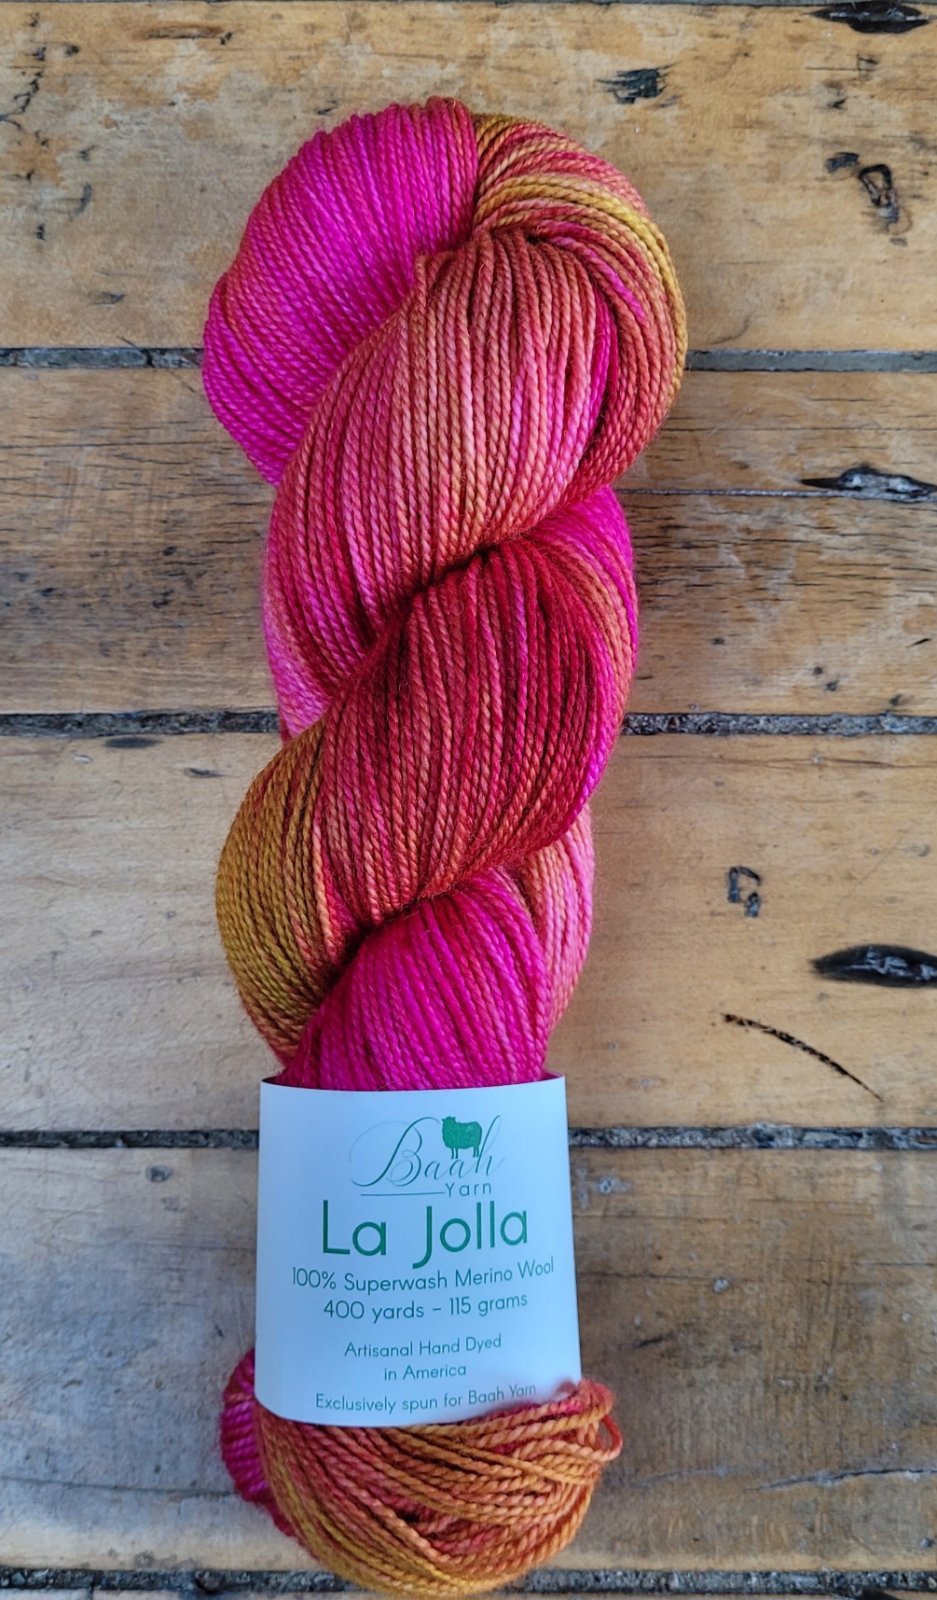 La Jolla from Baah